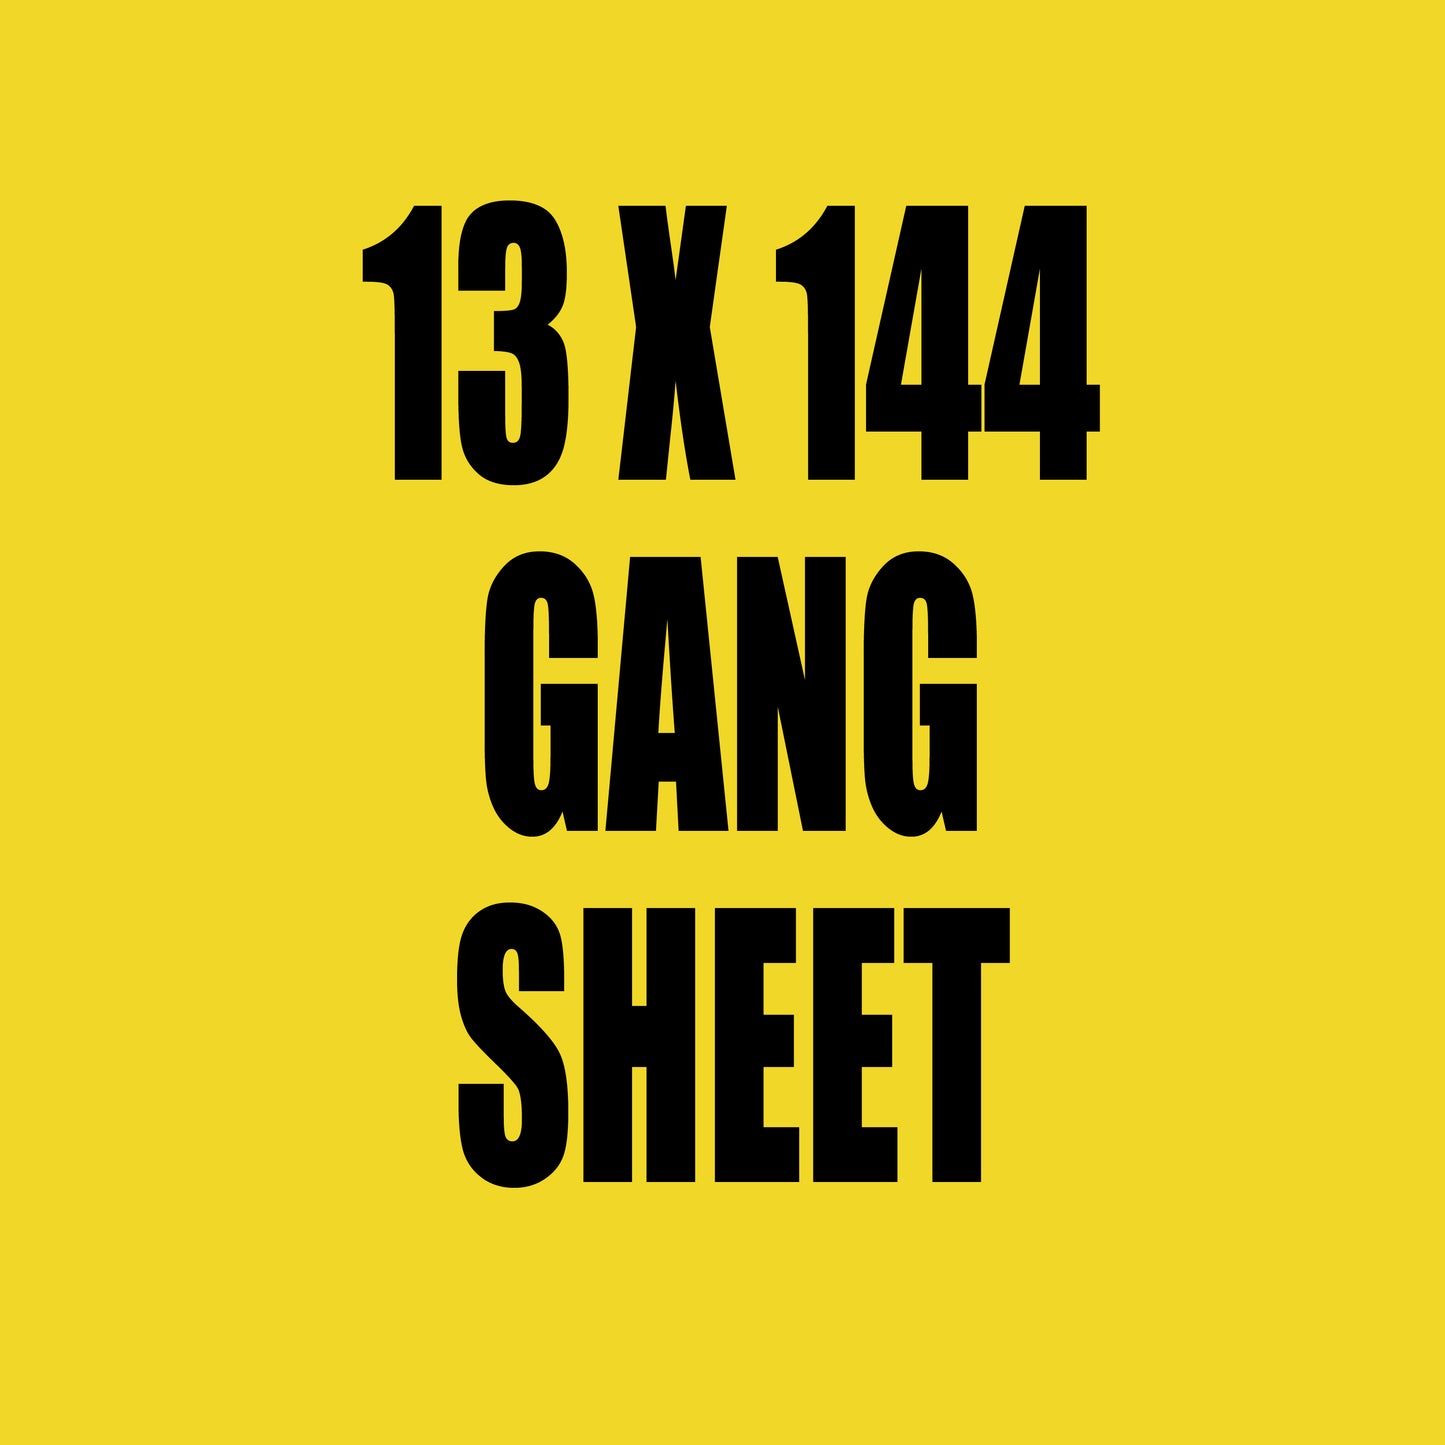 13x144 Gang Sheet